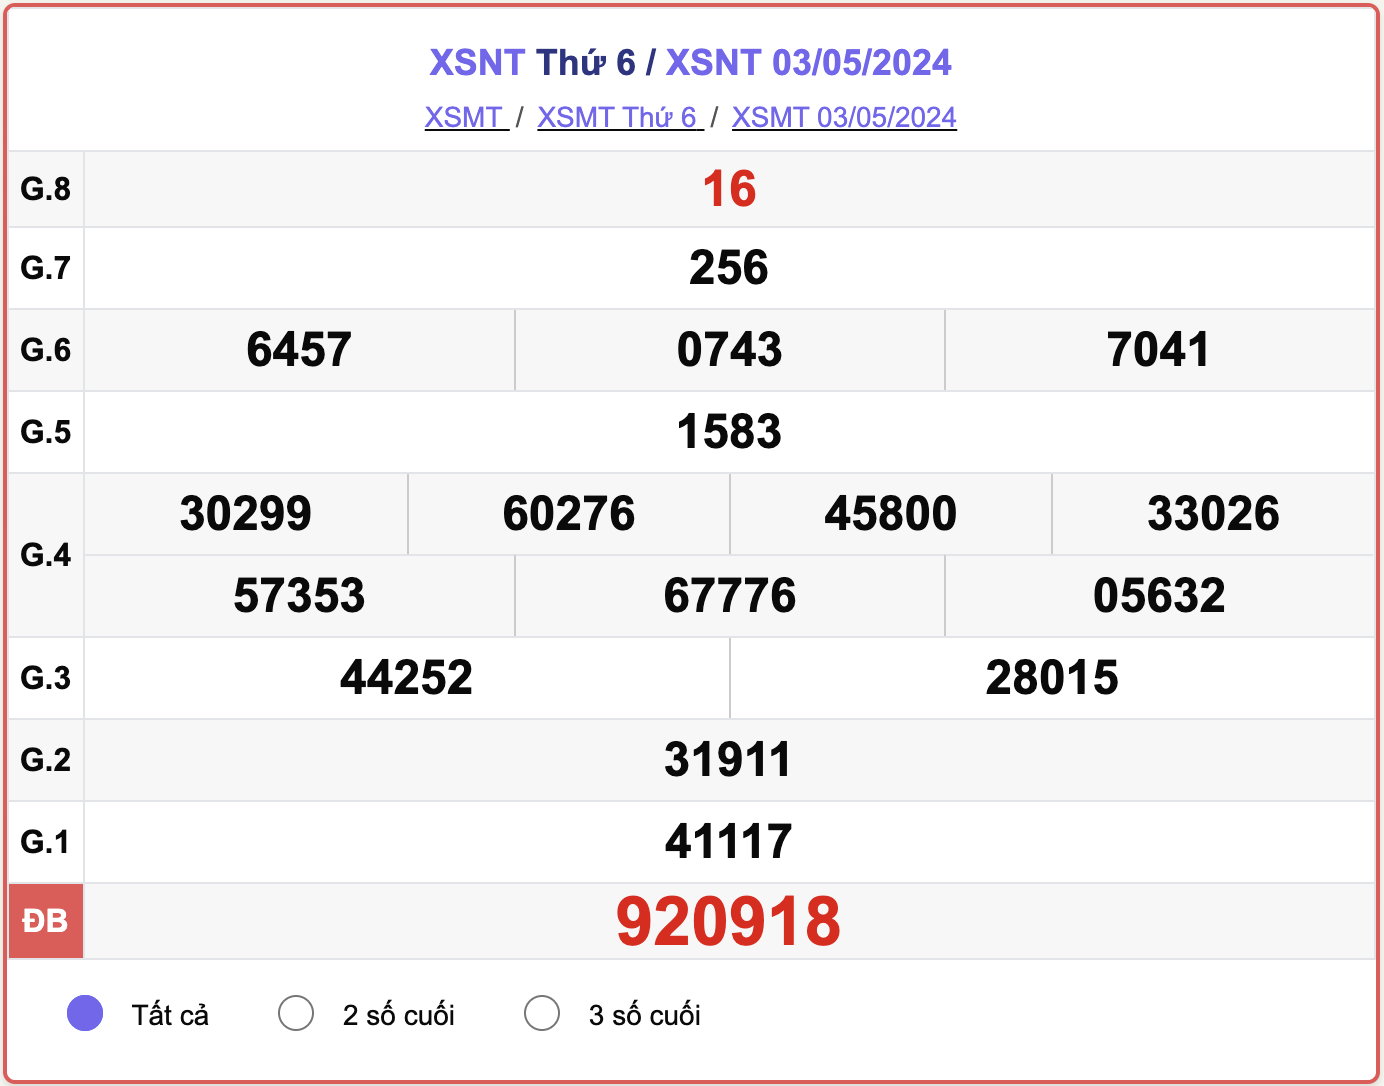 XSNT thứ Sáu, kết quả xổ số Ninh Thuận ngày 3/5/2024.